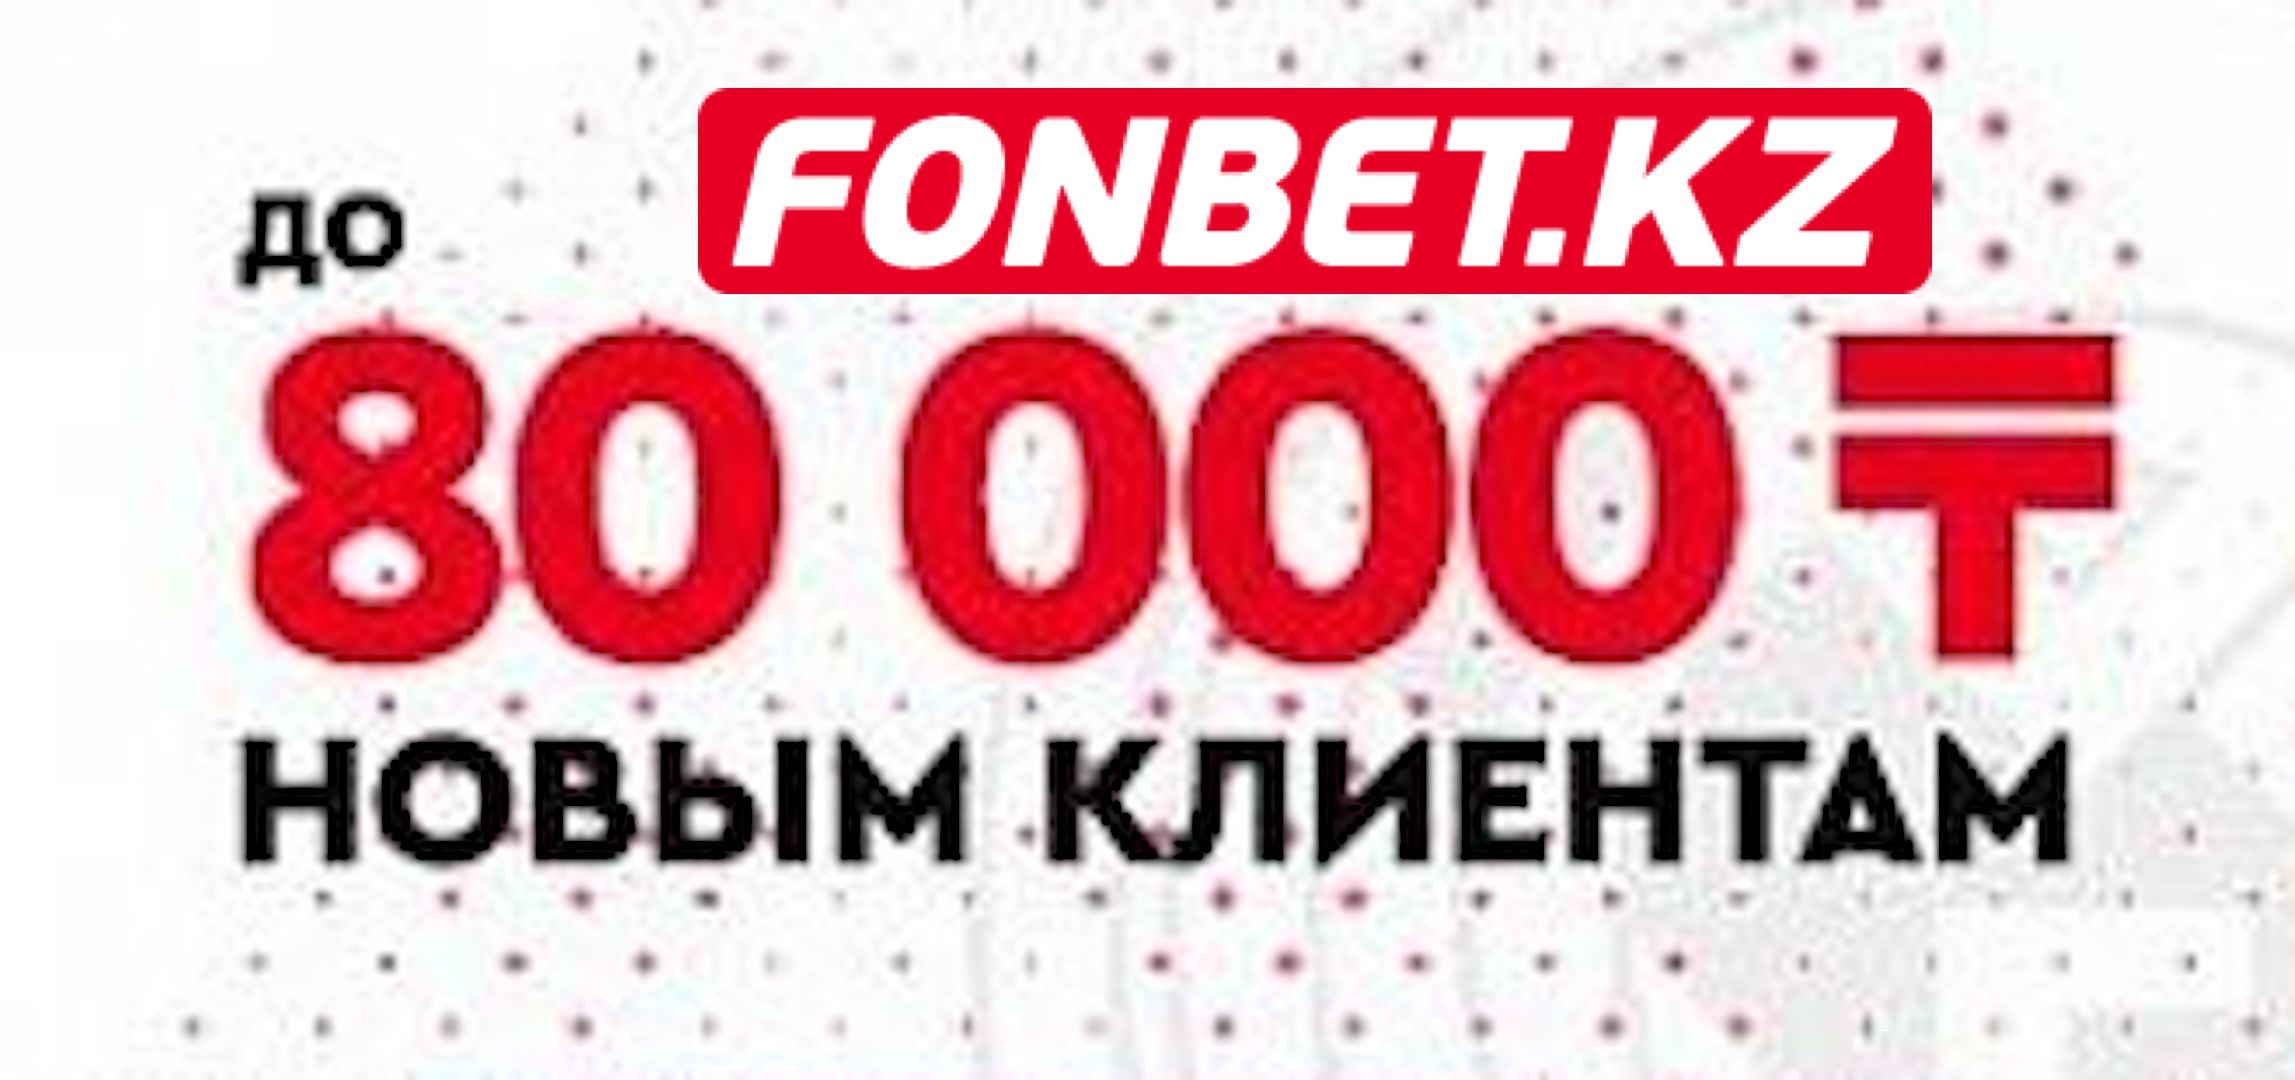 БК «Фонбет» в Казахстане предлагает бонус до 80000 тенге для новых клиентов